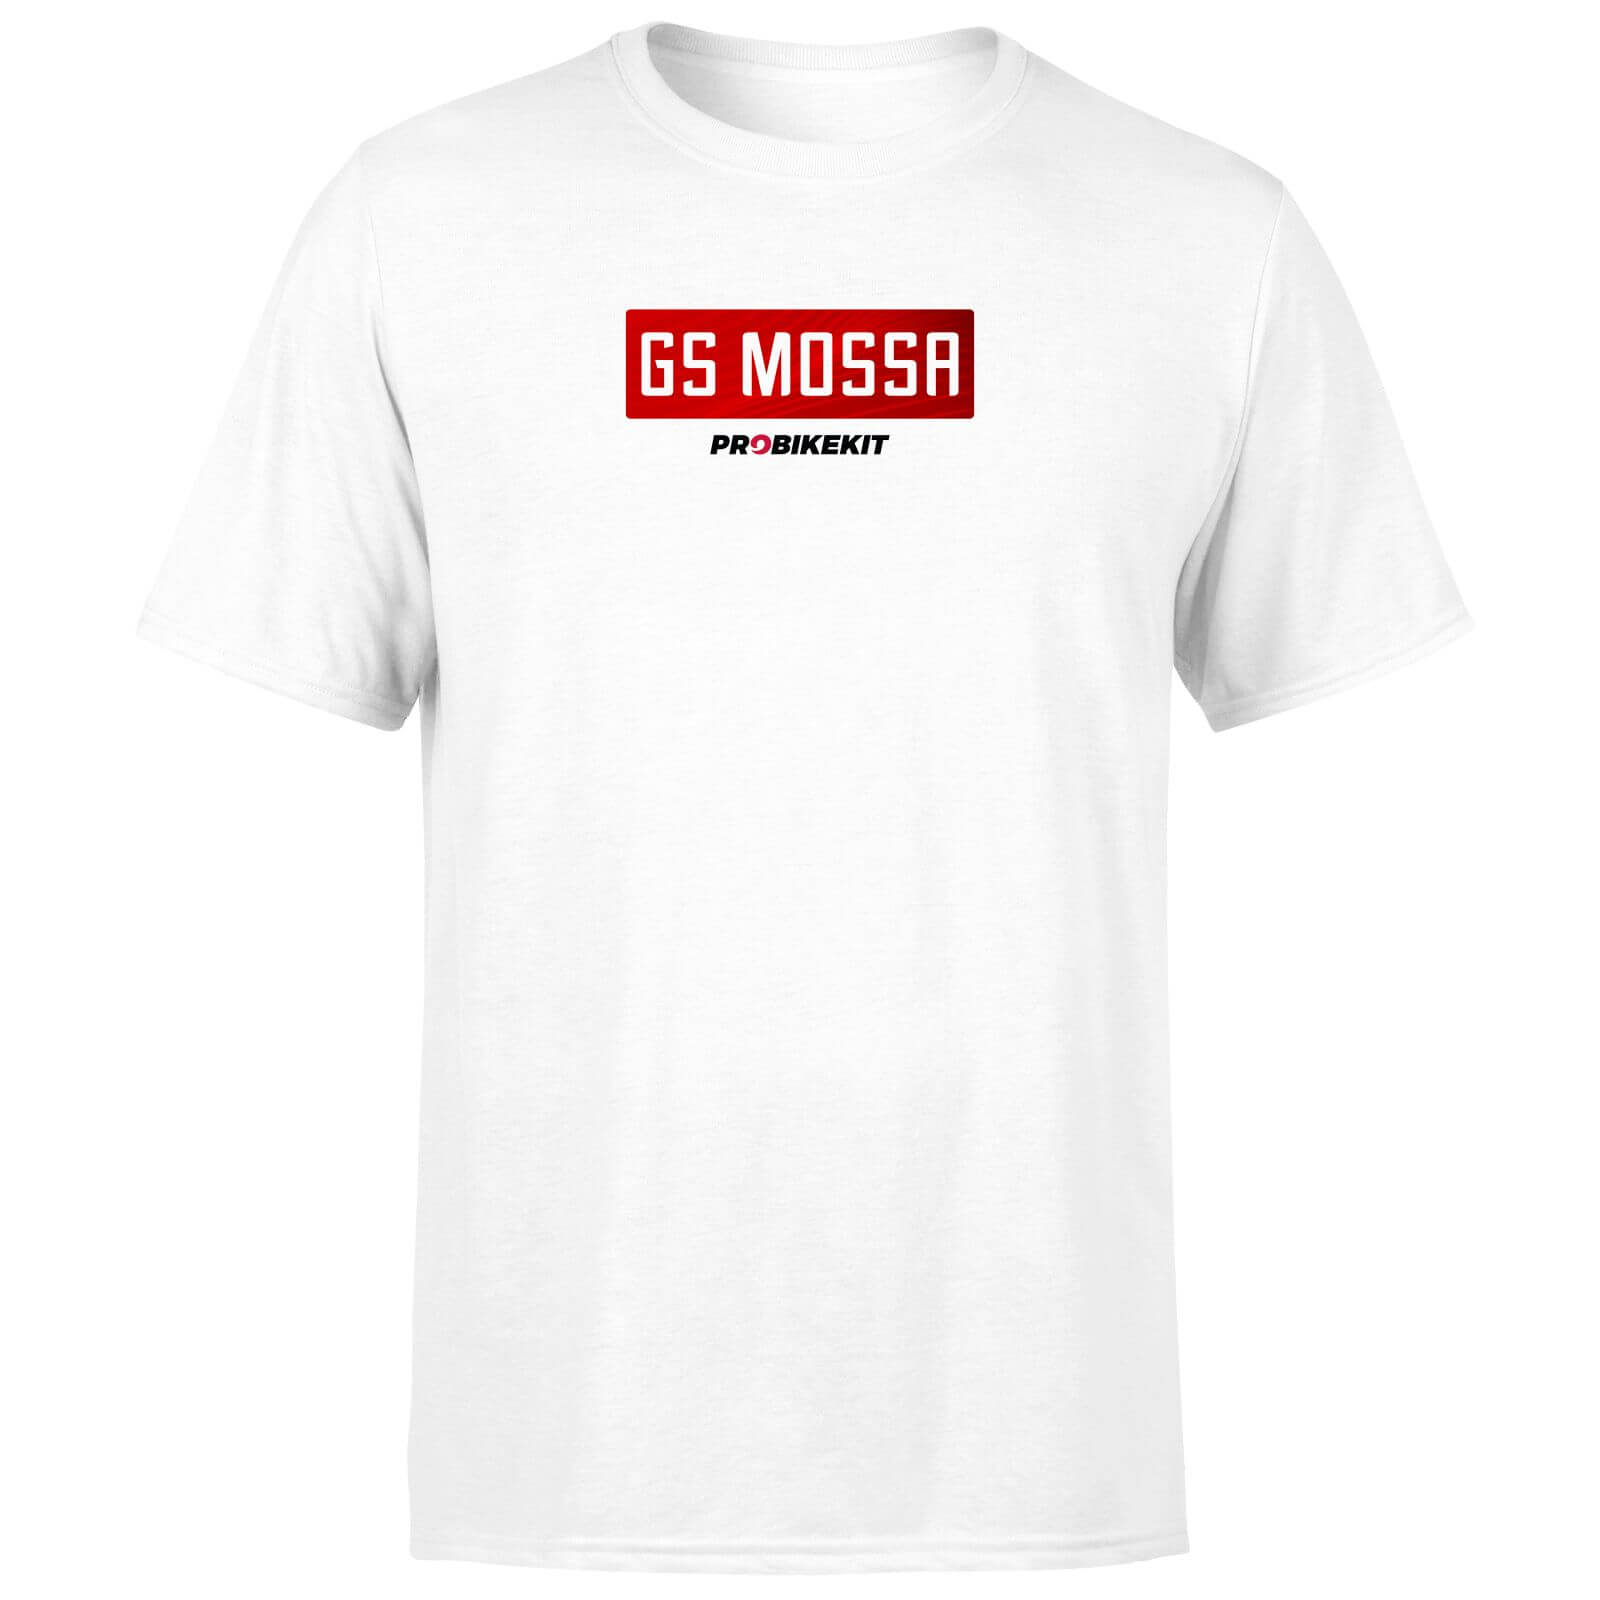 PBK GS Mossa Boxed Chest Logo Men's T-Shirt - White - S - White